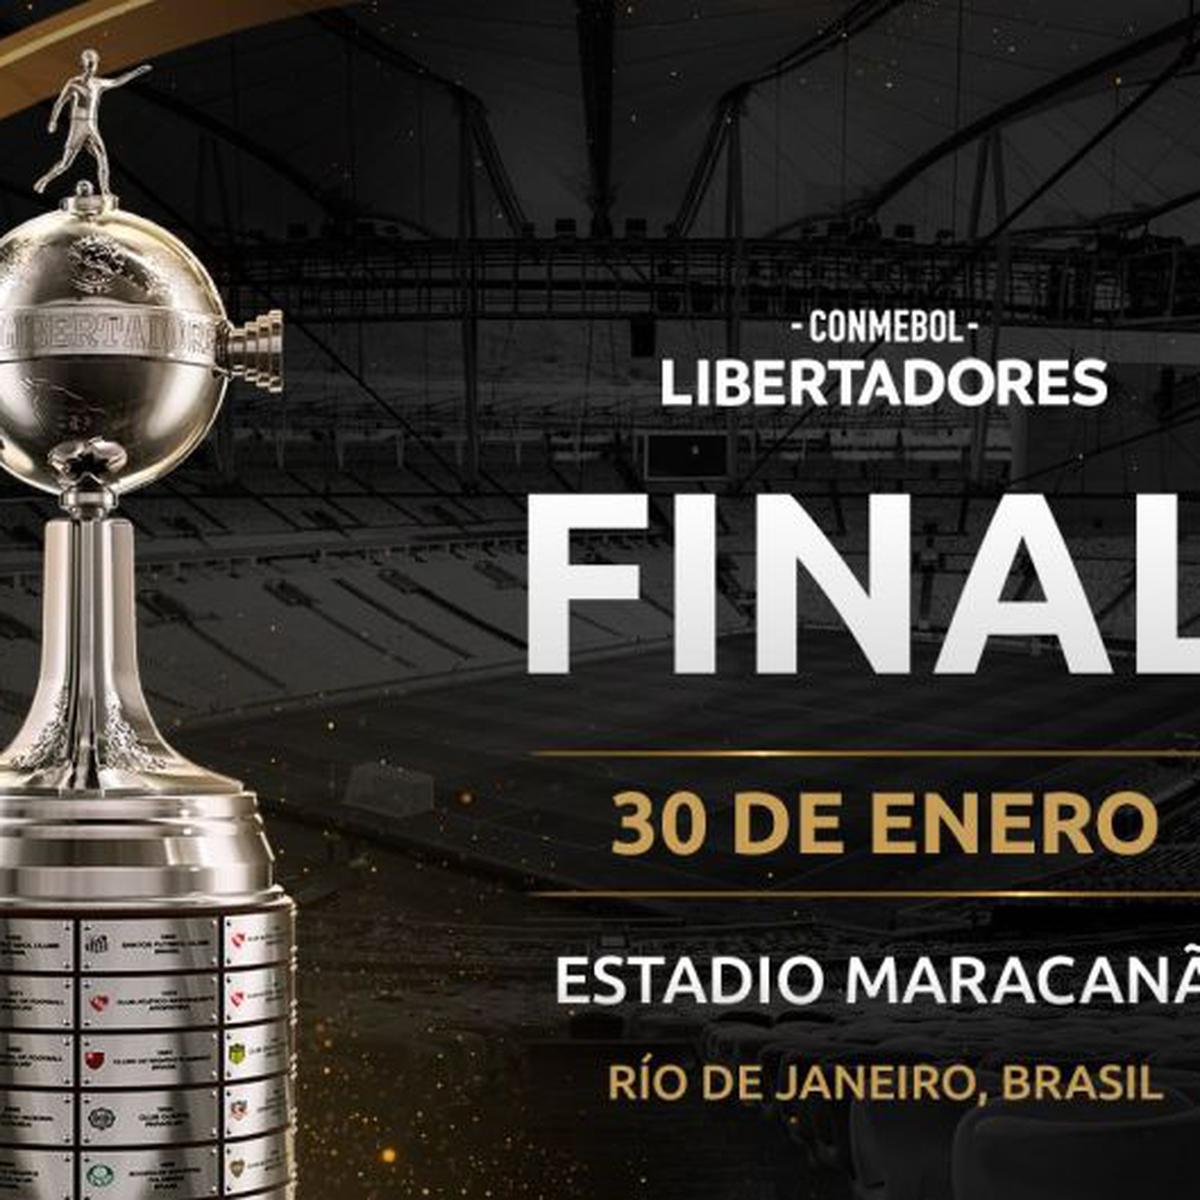 Final Copa Libertadores 2020 2021 Se Jugara Sin Publico Asi Lo Confirmo Conmebol Mediante Un Comunicado Futbol Internacional Depor